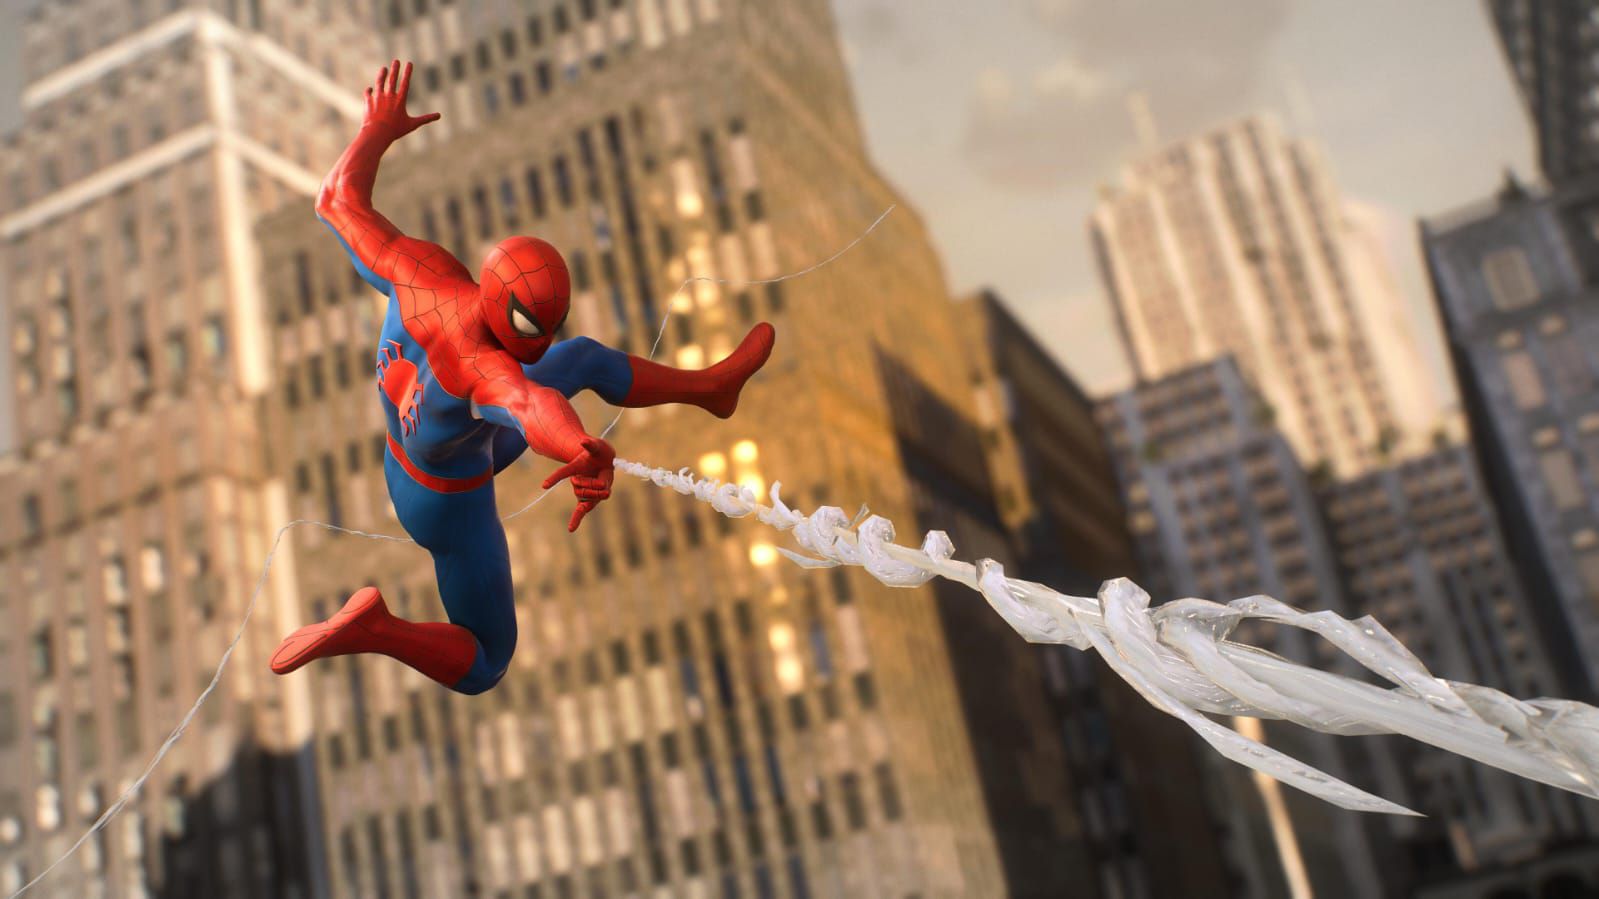 Spider-Man 2 no PS4? Tire dúvidas sobre lançamento e gameplay do jogo